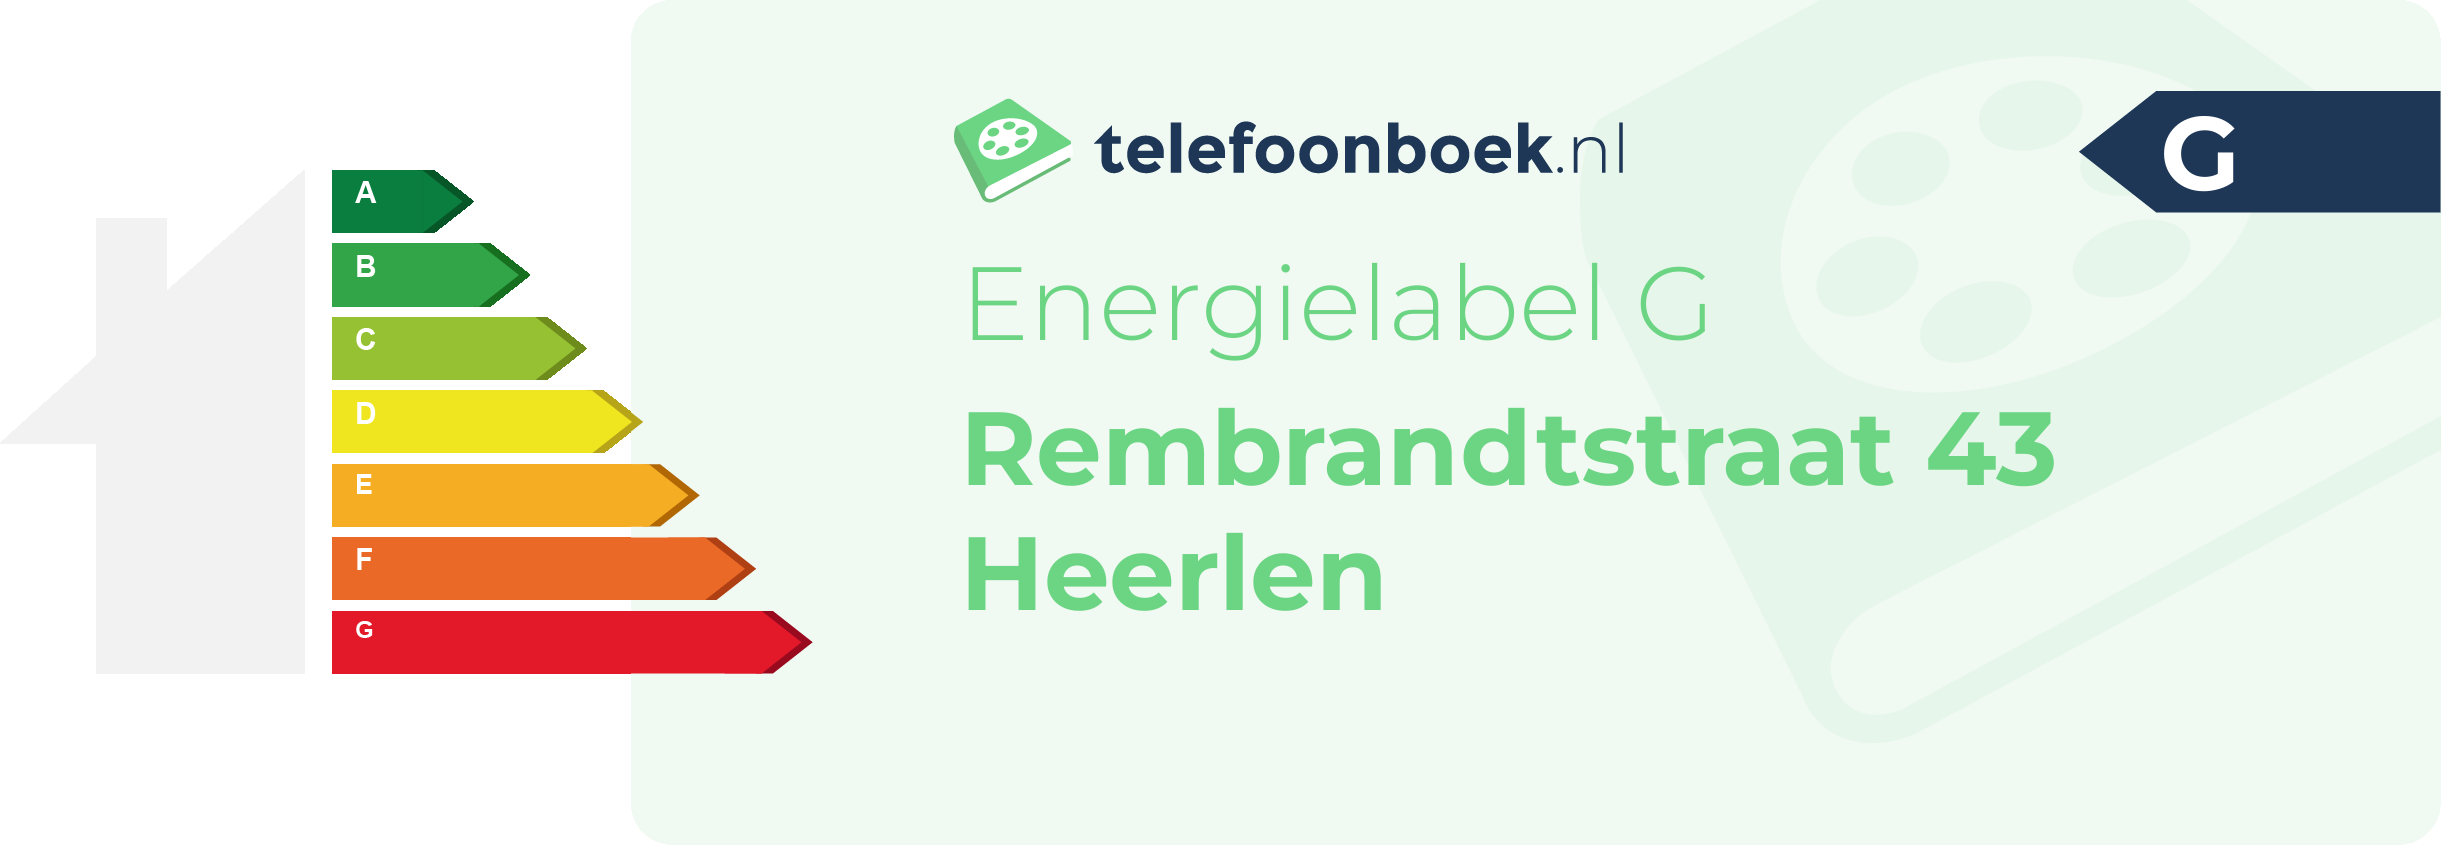 Energielabel Rembrandtstraat 43 Heerlen